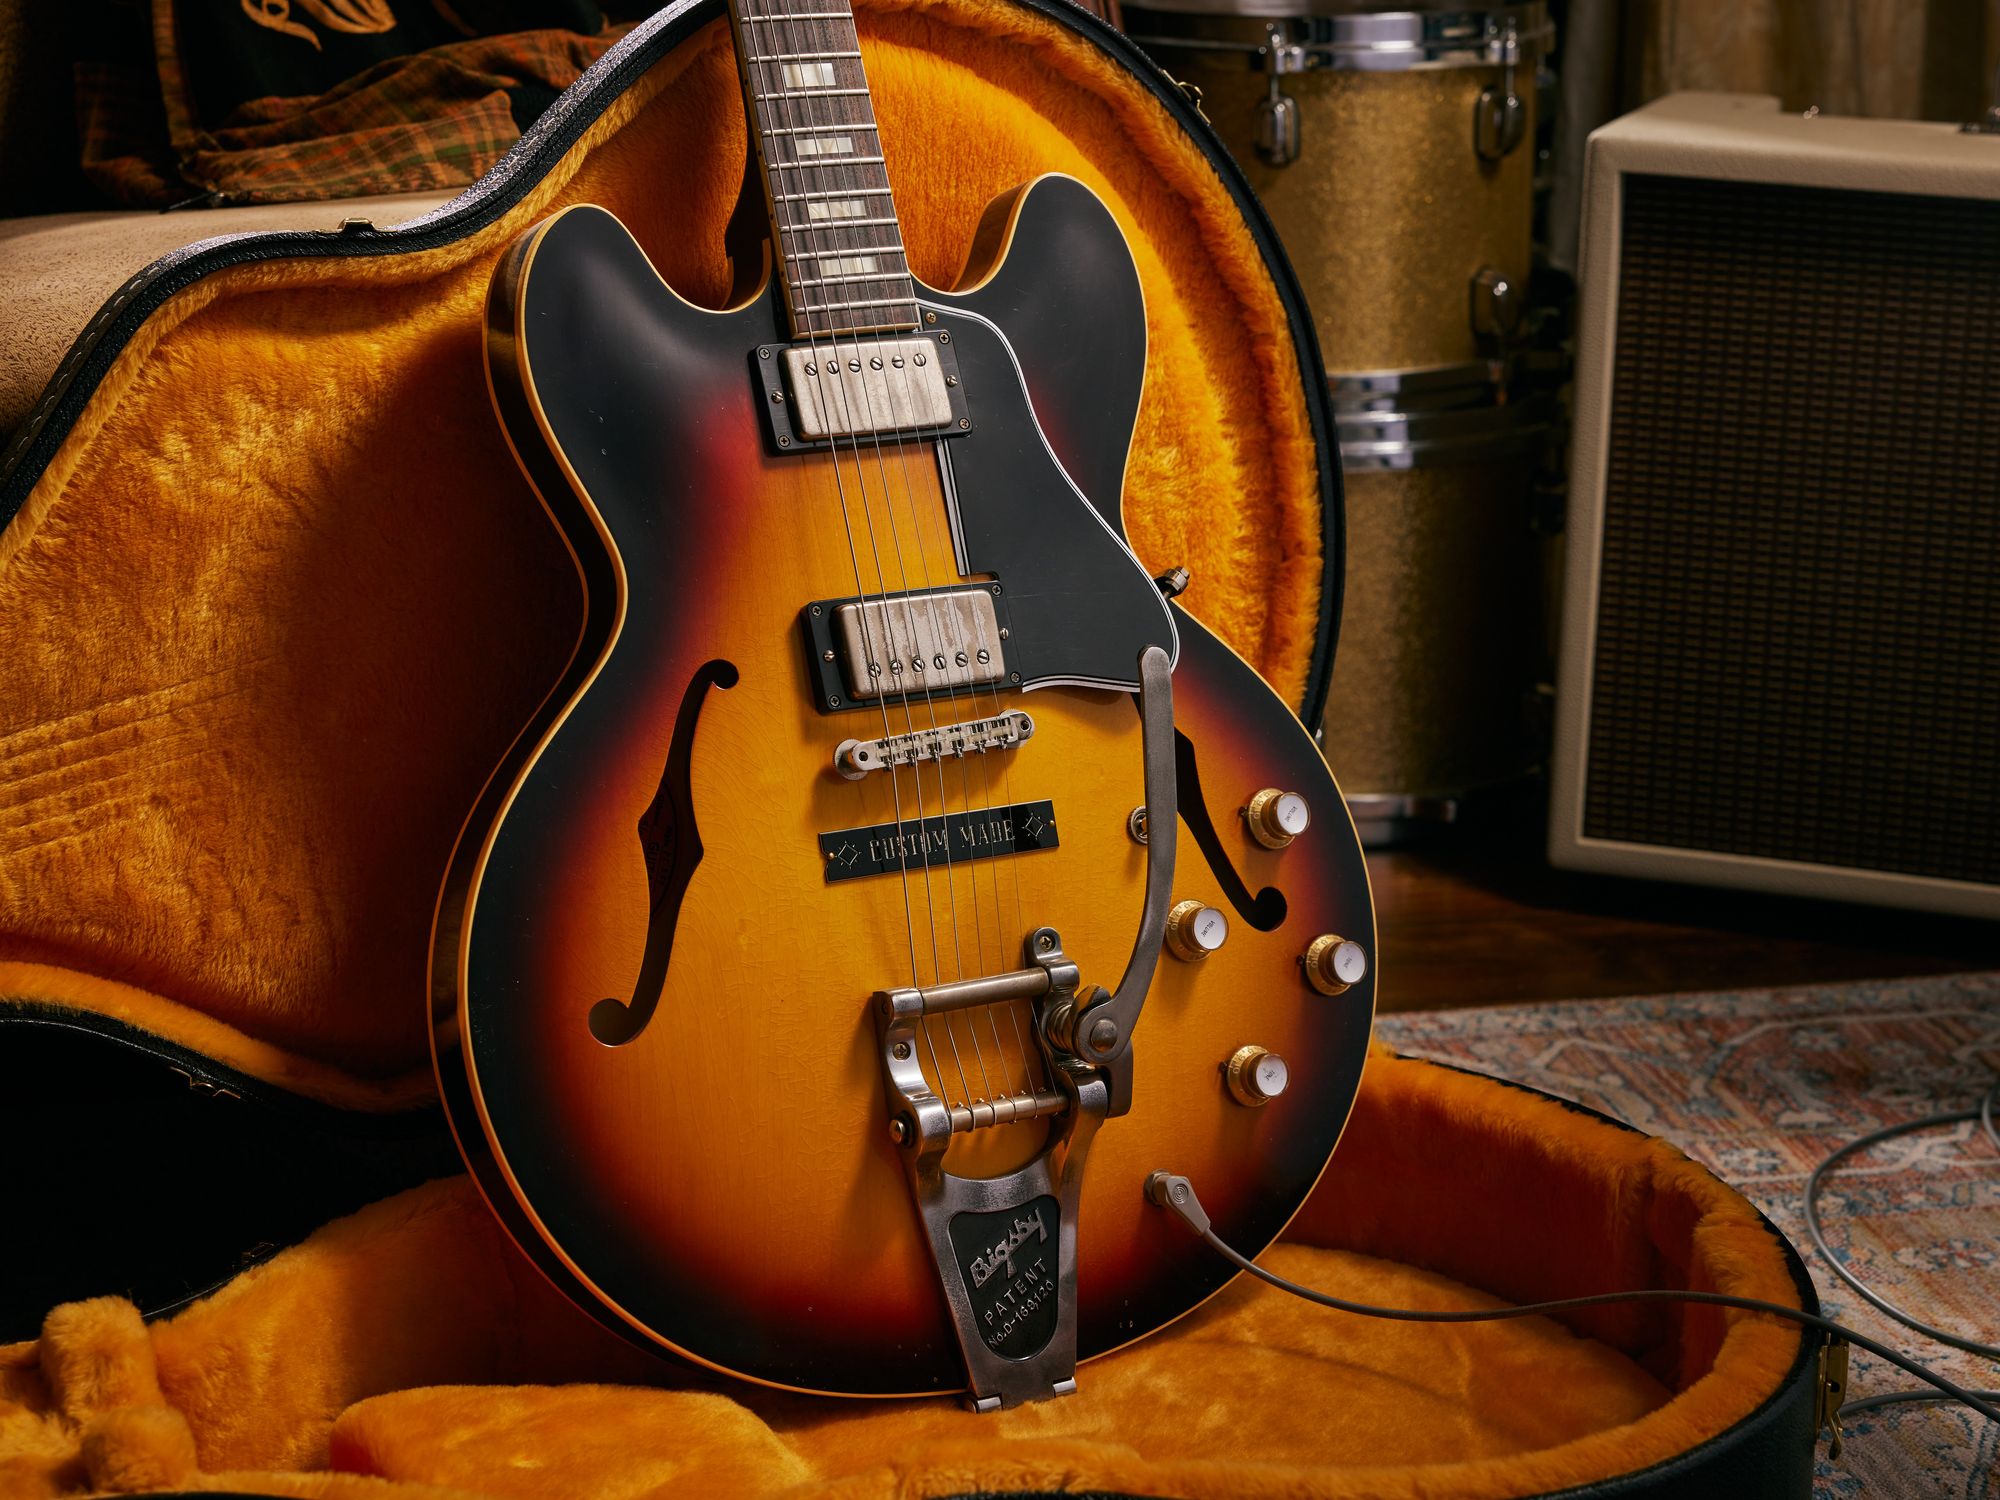 Slash Signature ES-335 guitar